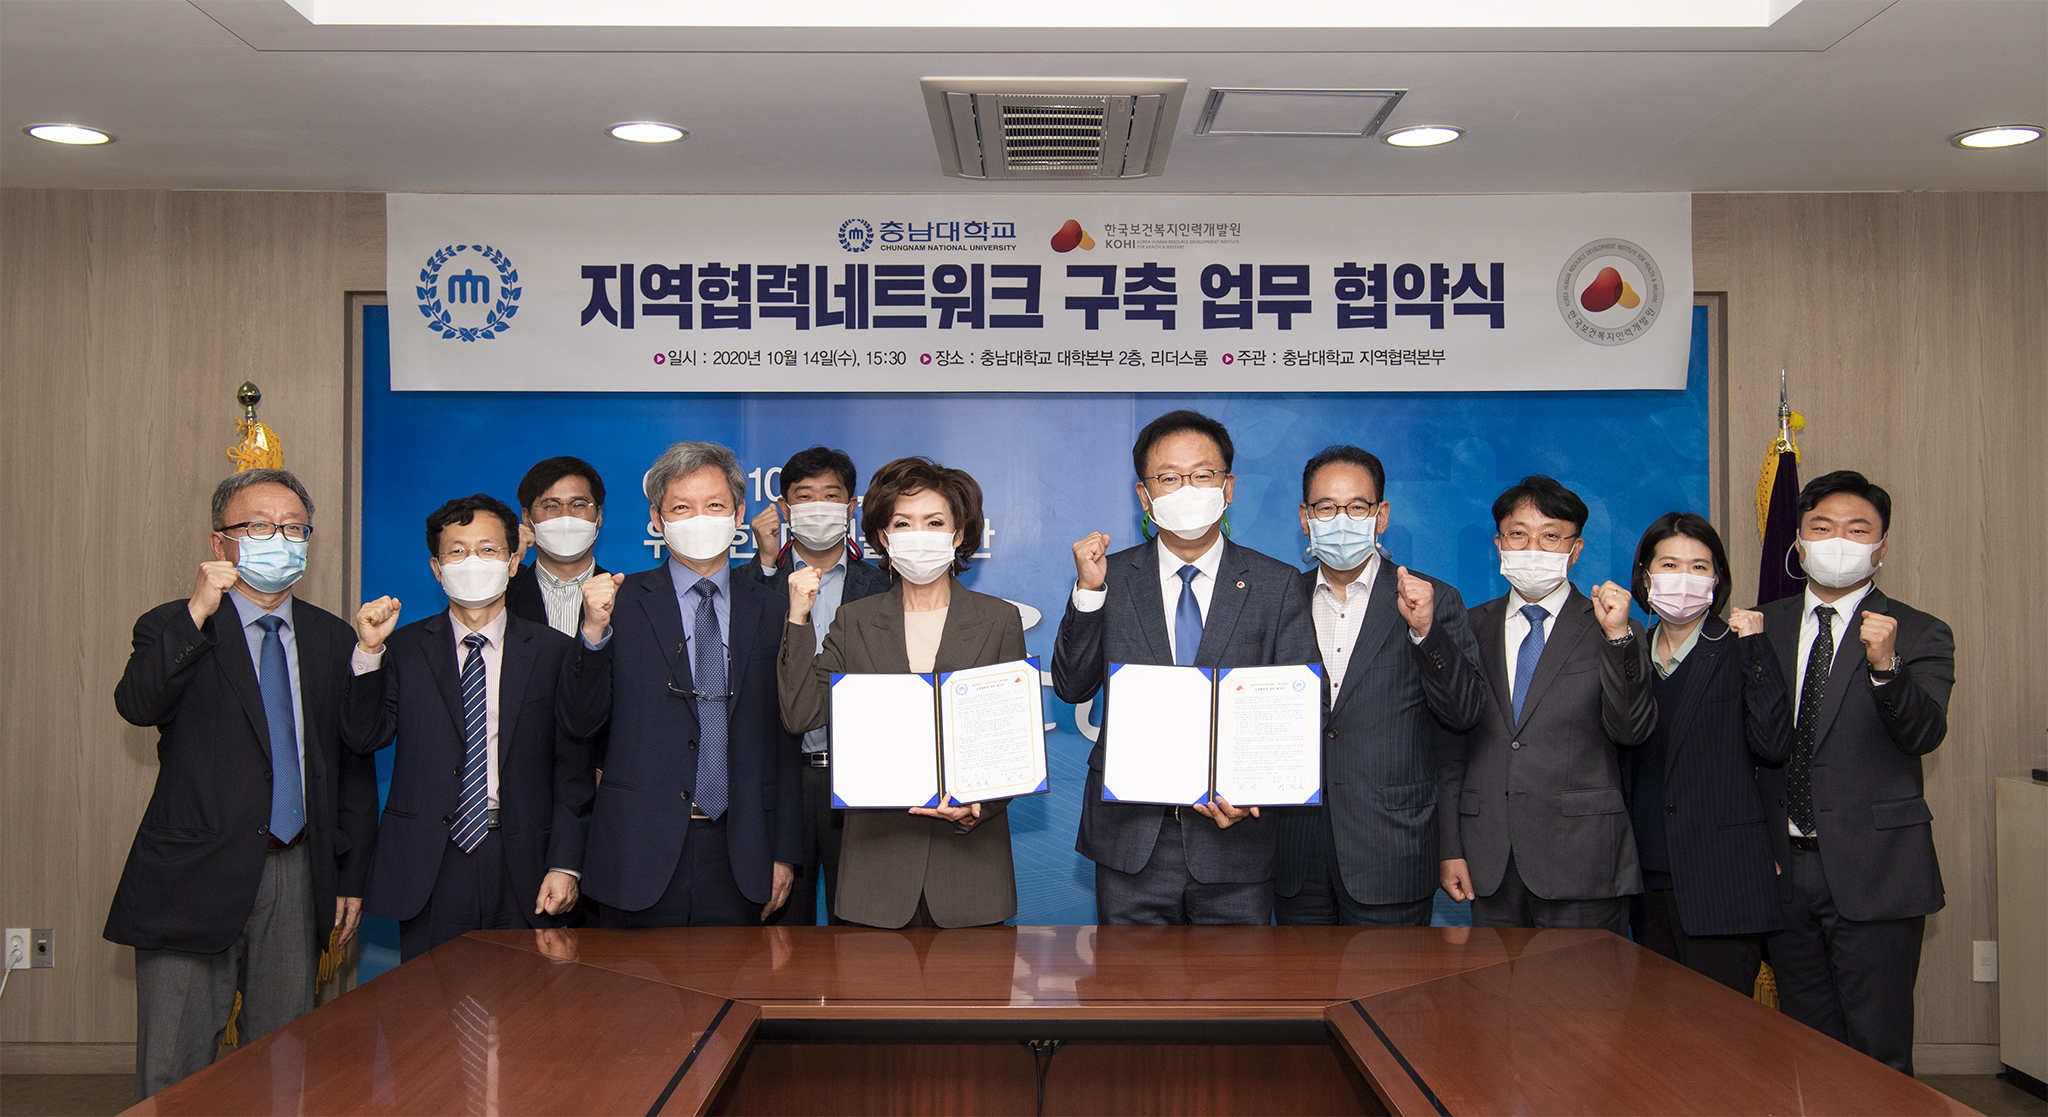 한국보건복지인력개발원 업무 협약식 [2020. 10. 14.(수) 15:30] 사진3